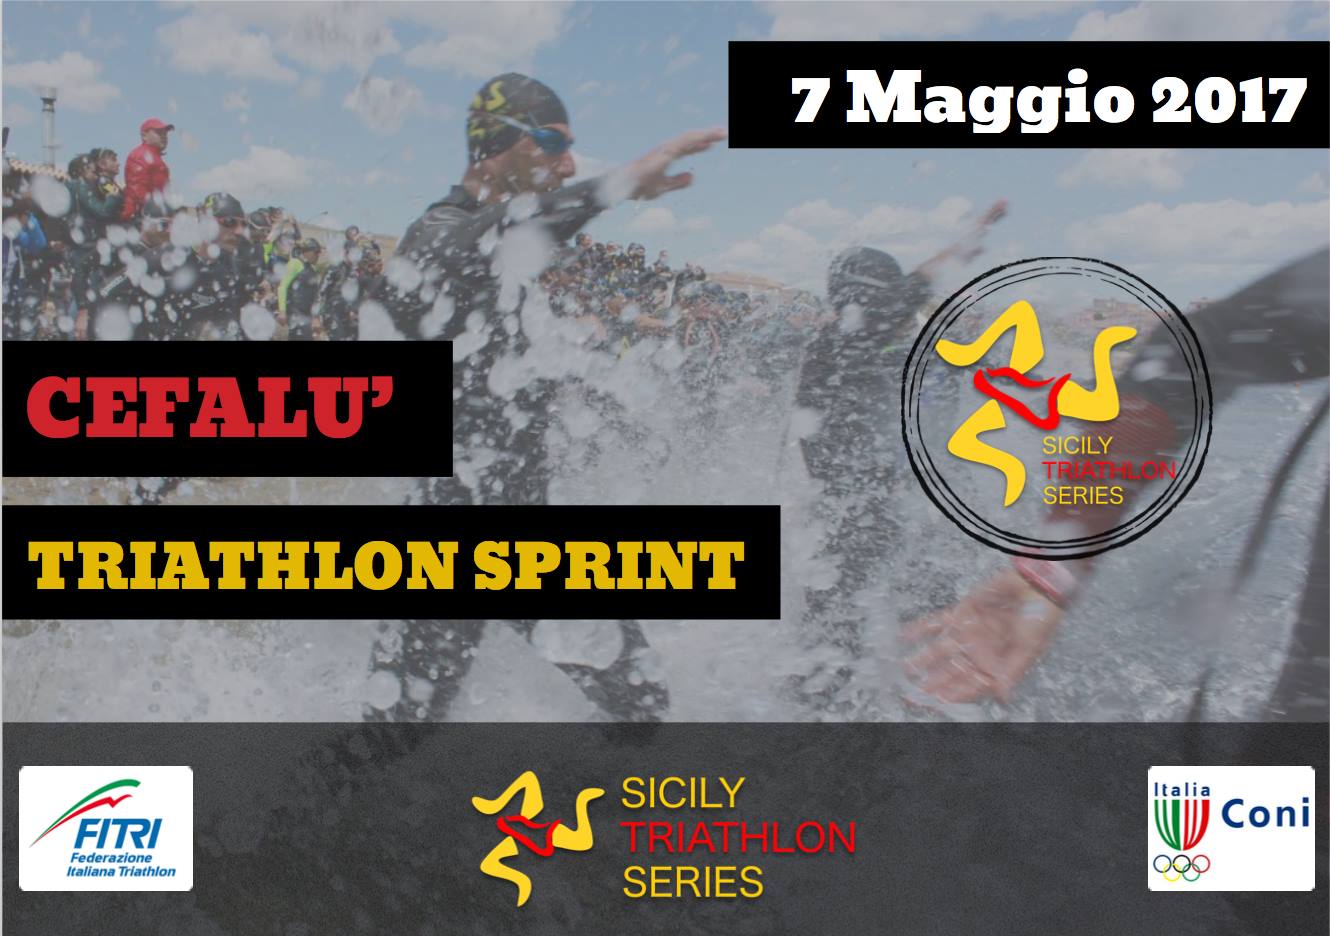 Domenica a Cefalù la terza tappa della Sicily Series, 280 partecipanti